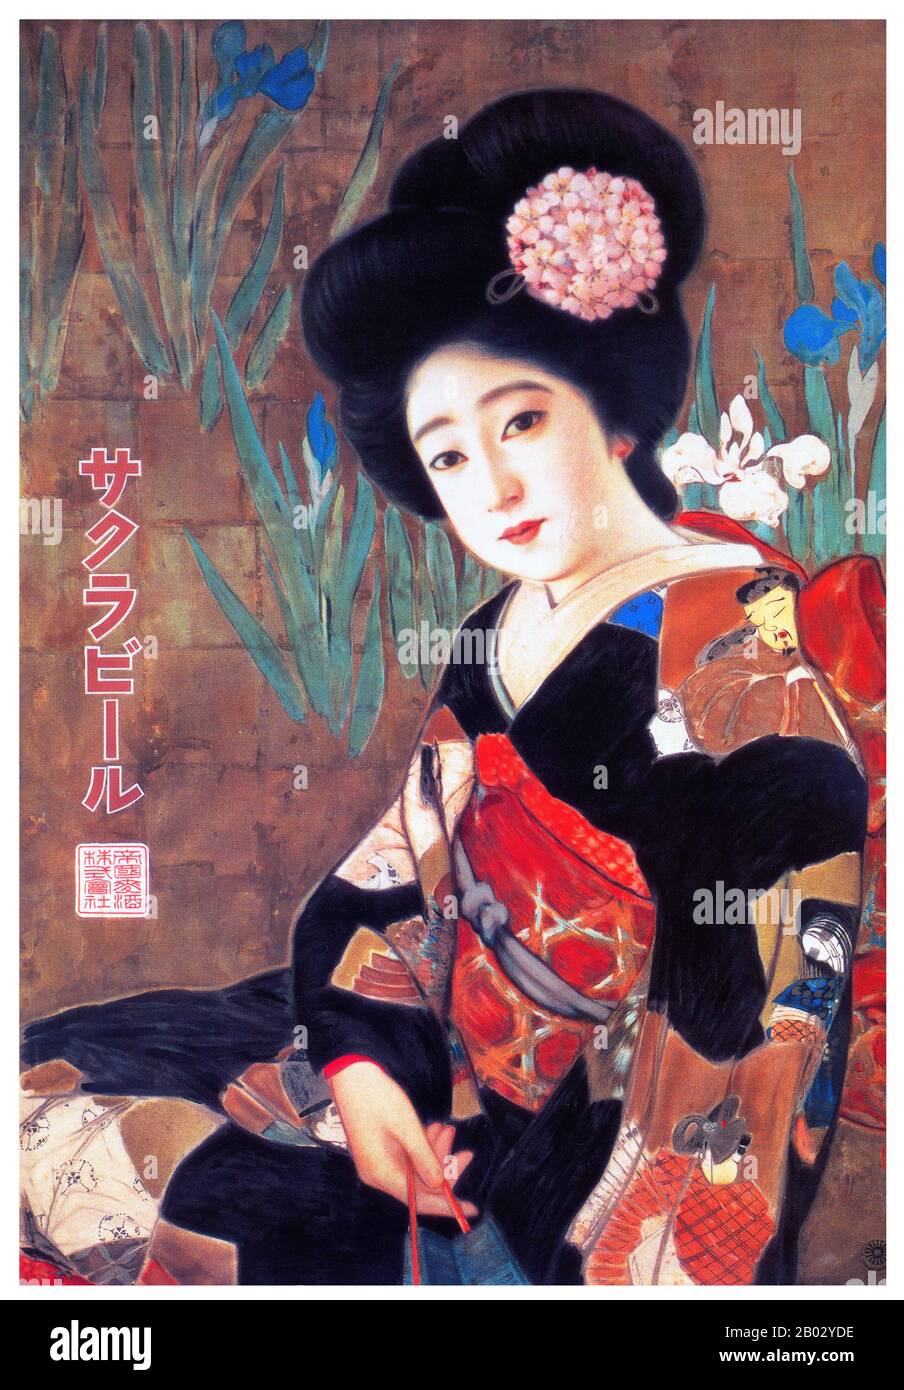 Tsunetomi Kitano si è fatto un nome come grande artista di bijin-ga, immagini di belle donne. Era una figura dominante nella scena artistica di Osaka nella prima metà del ventesimo secolo. Foto Stock